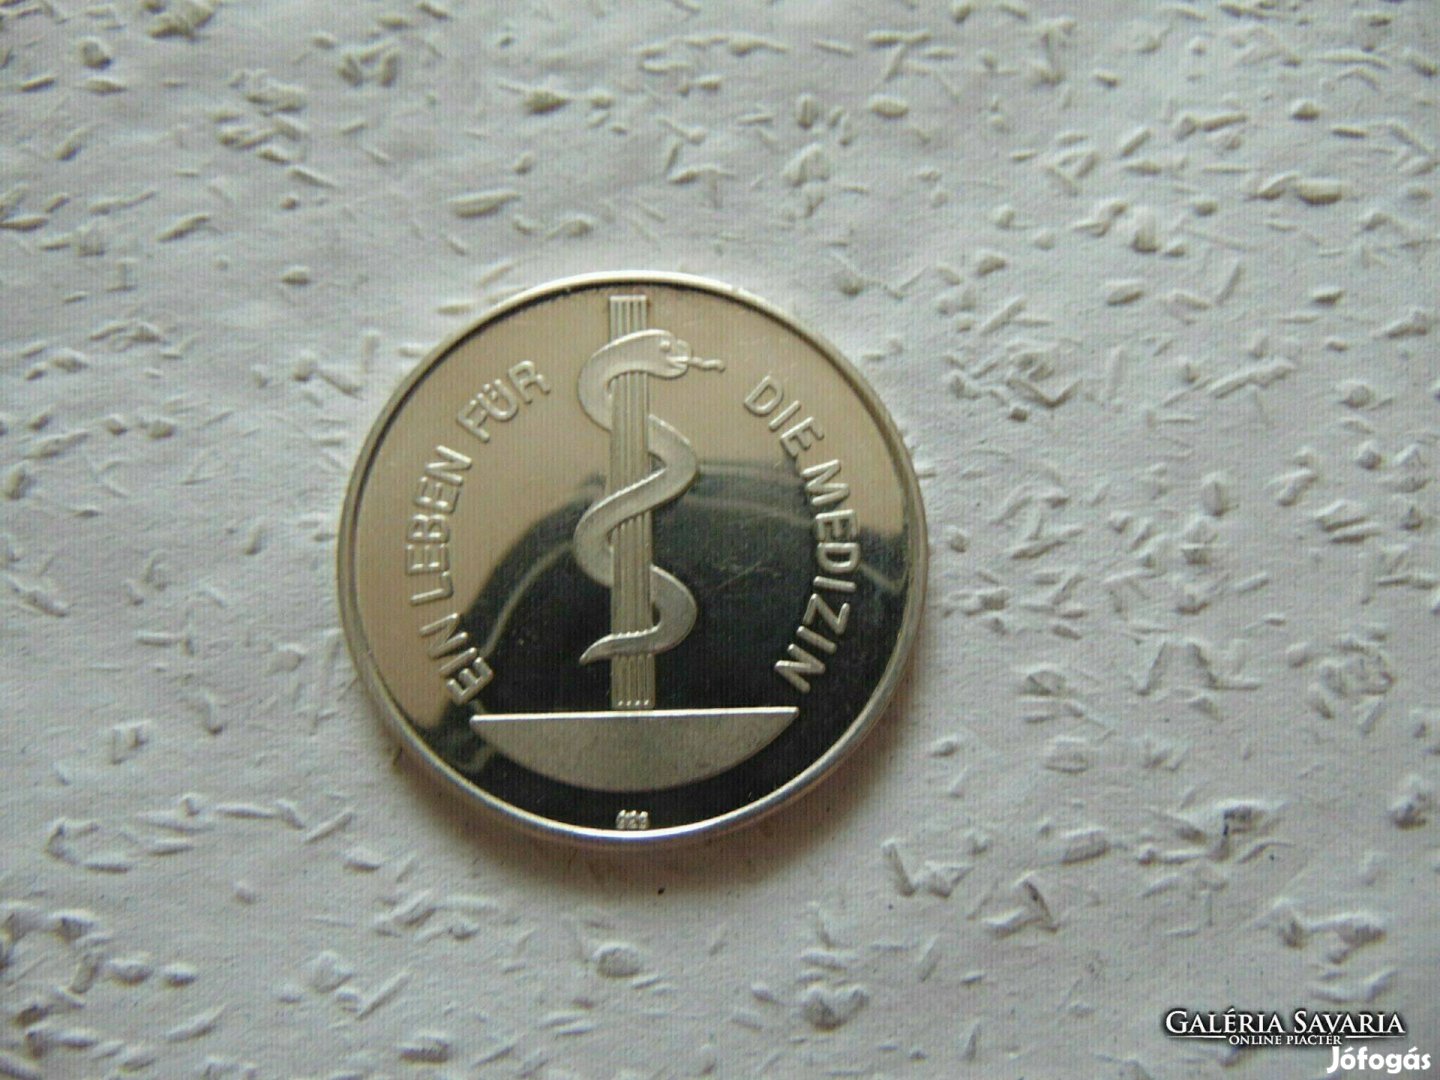 Németország ezüst emlékérem 1975 PP 23.02 gramm 925 - ös ezüst